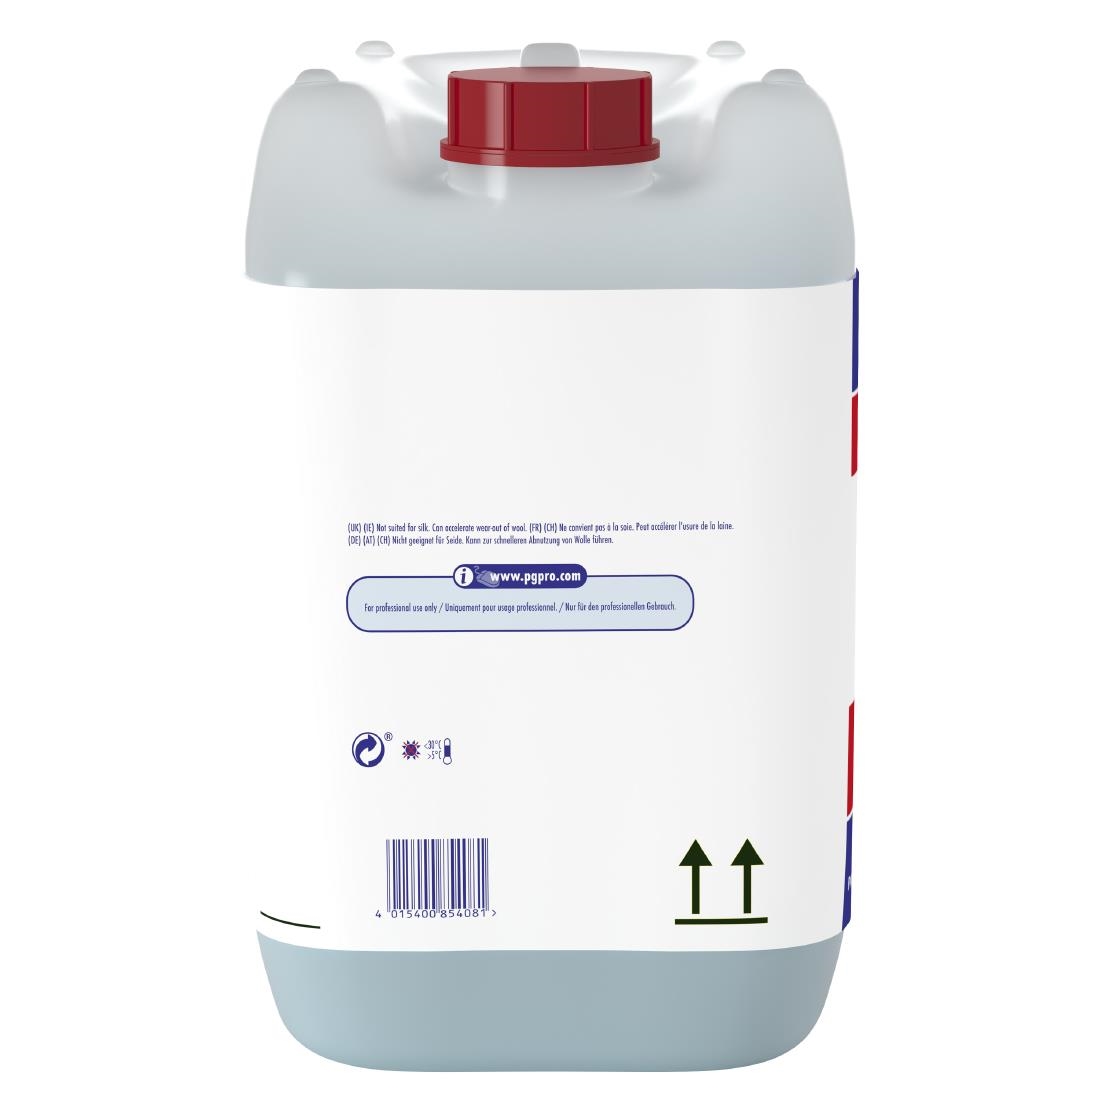 Ariel Professional S1 Actilift Laundry Detergent 10Ltr (DX542)